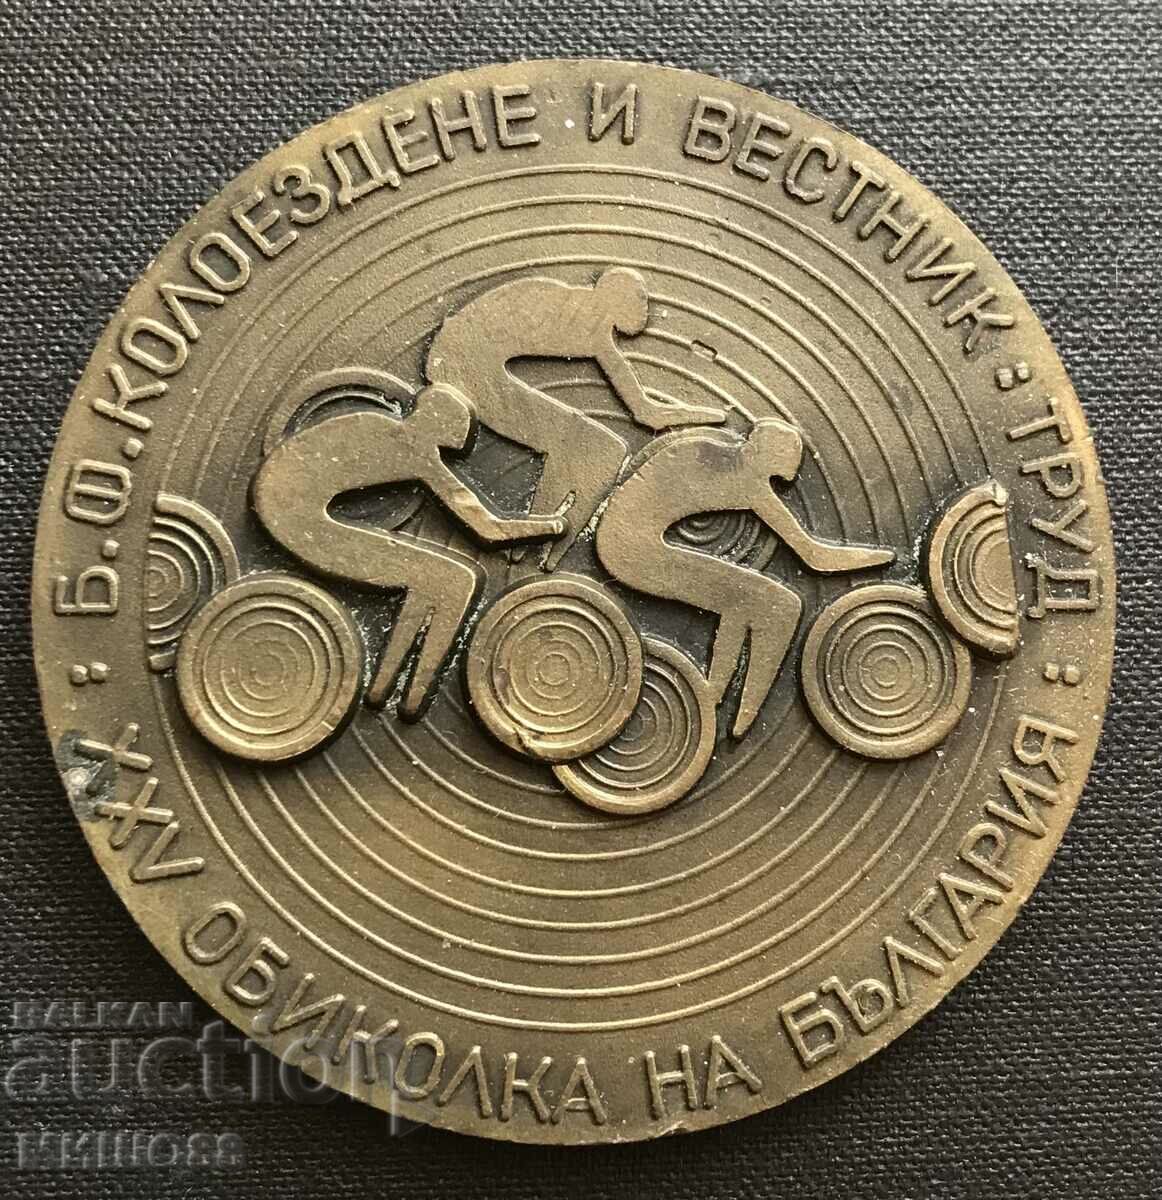 Πλακέτα-μετάλλιο XXV ποδηλατική περιήγηση.